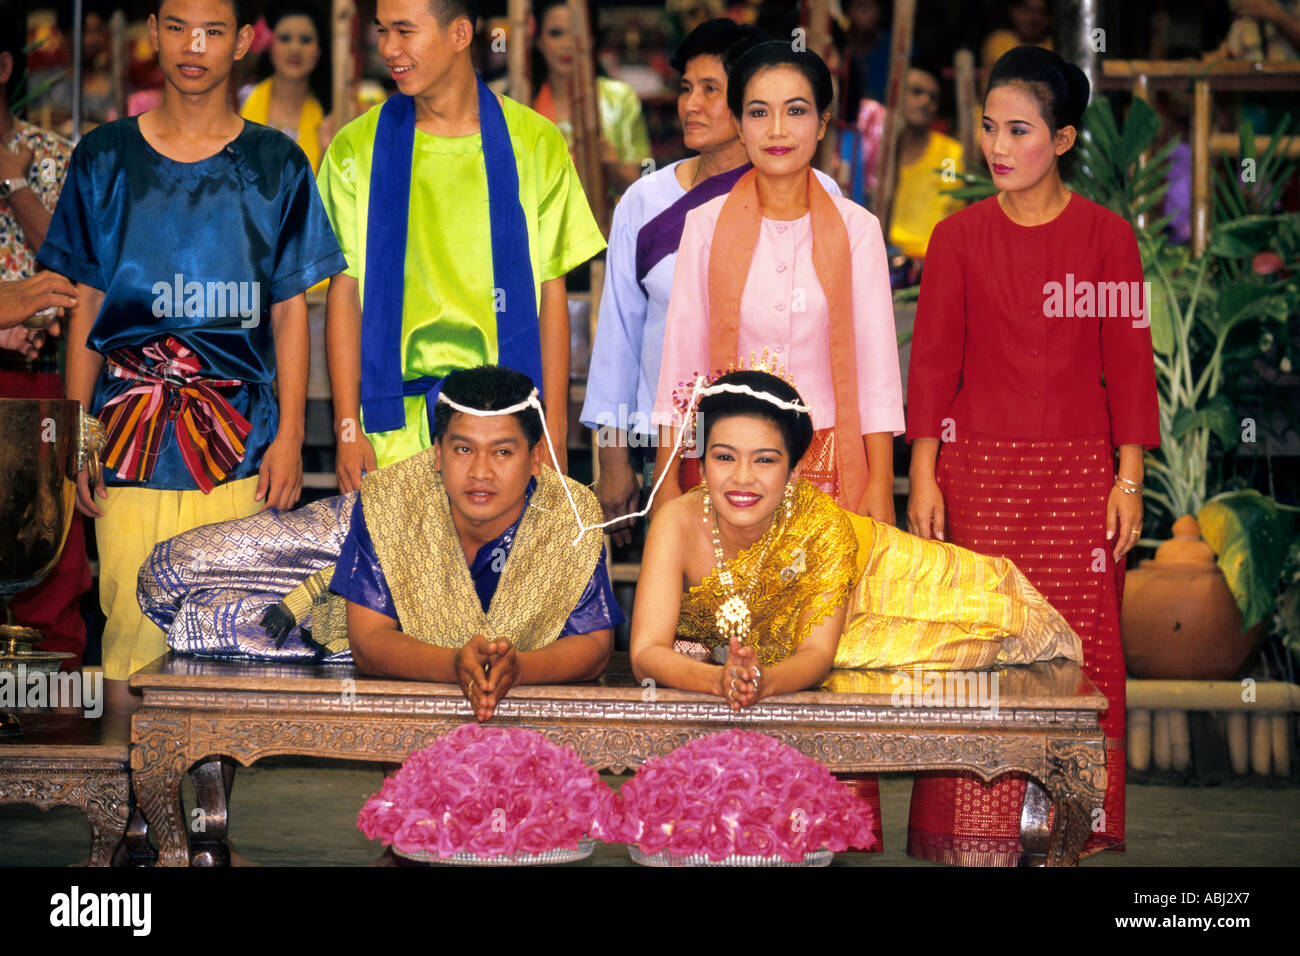 Des danseurs traditionnels à la cérémonie du mariage, au spectacle culturel, Roseraie, Bangkok, Thaïlande Banque D'Images